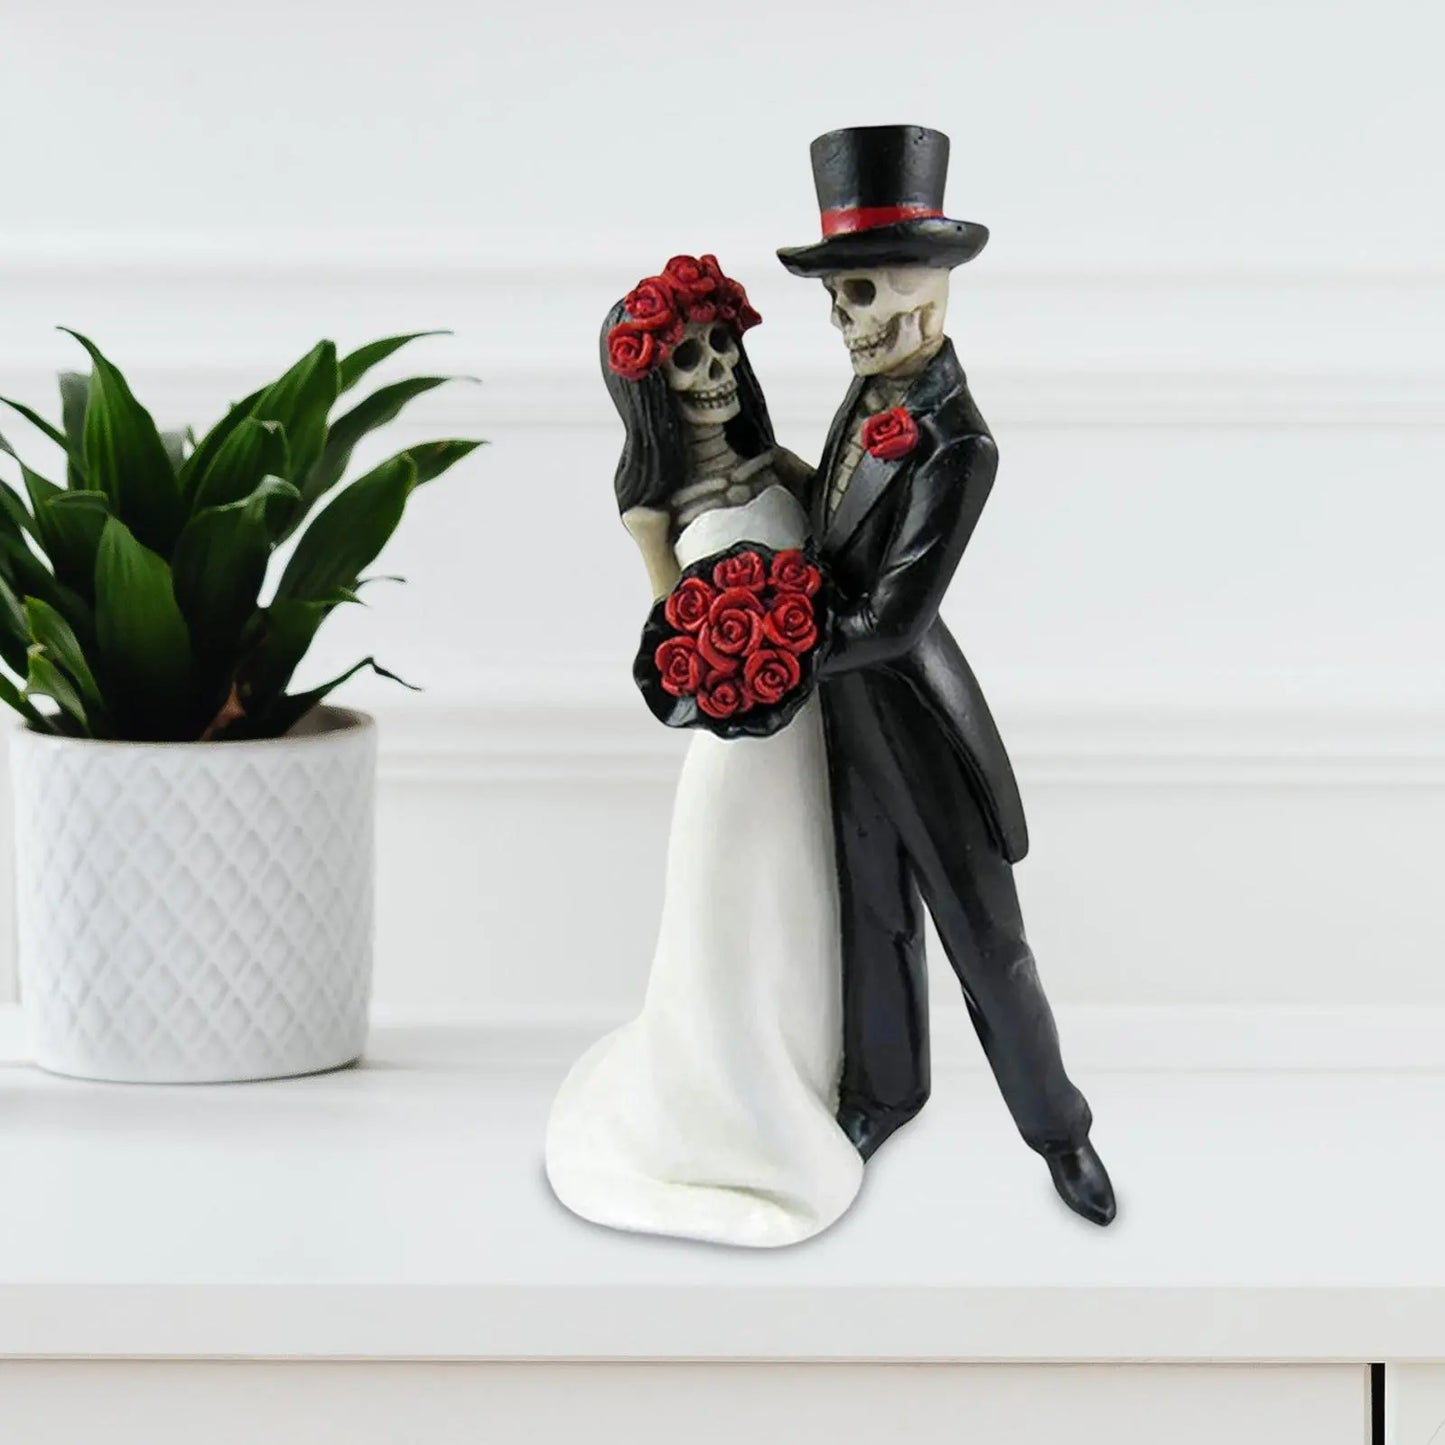 Totenkopf-Statue, Skelett, Hochzeitspaar, Braut, Kunst für Desktop-Dekorationen, Ornamente, Sammlerstück, Halloween-Kuchenaufsatz